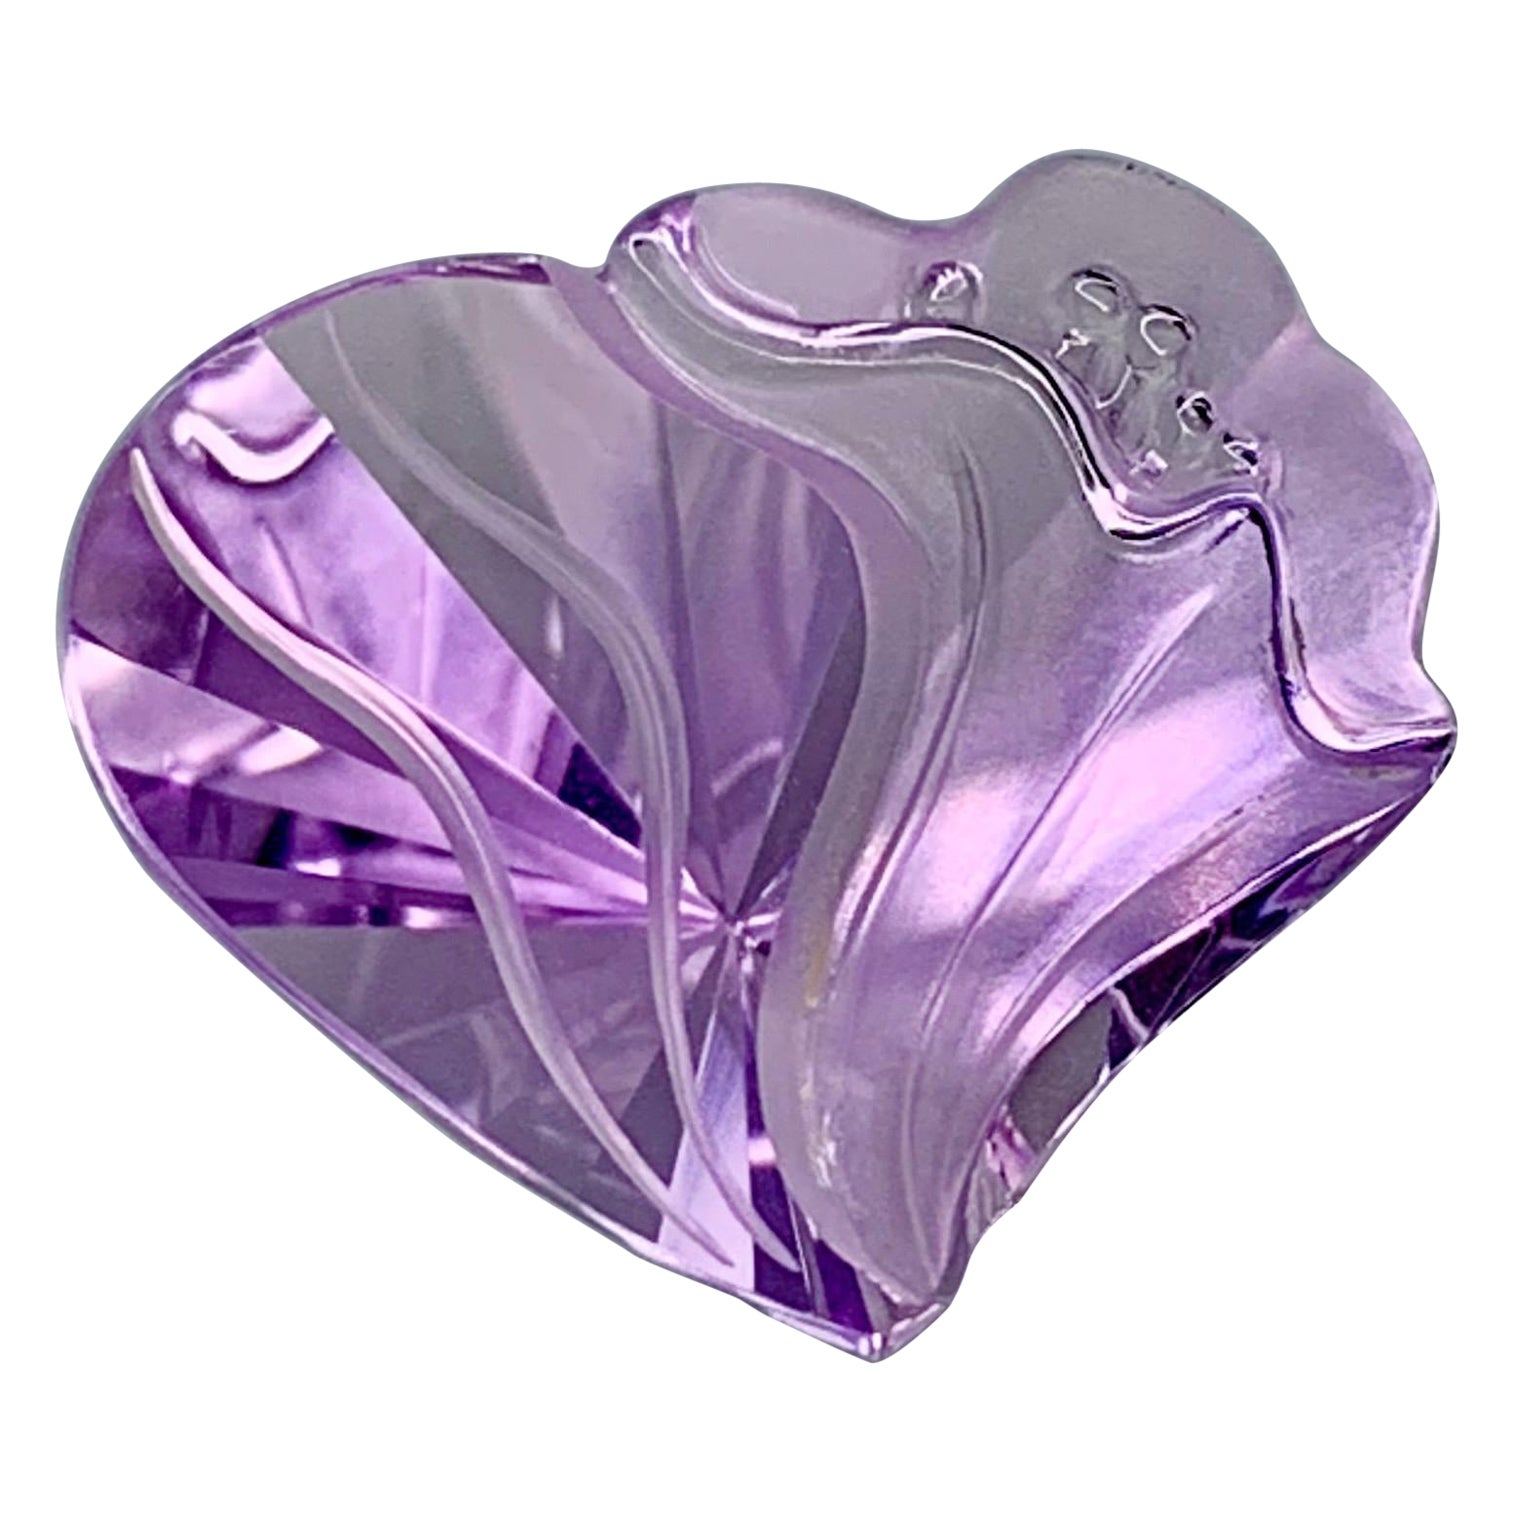 15.67 carat hand carved lavender amethyst gemstone For Sale